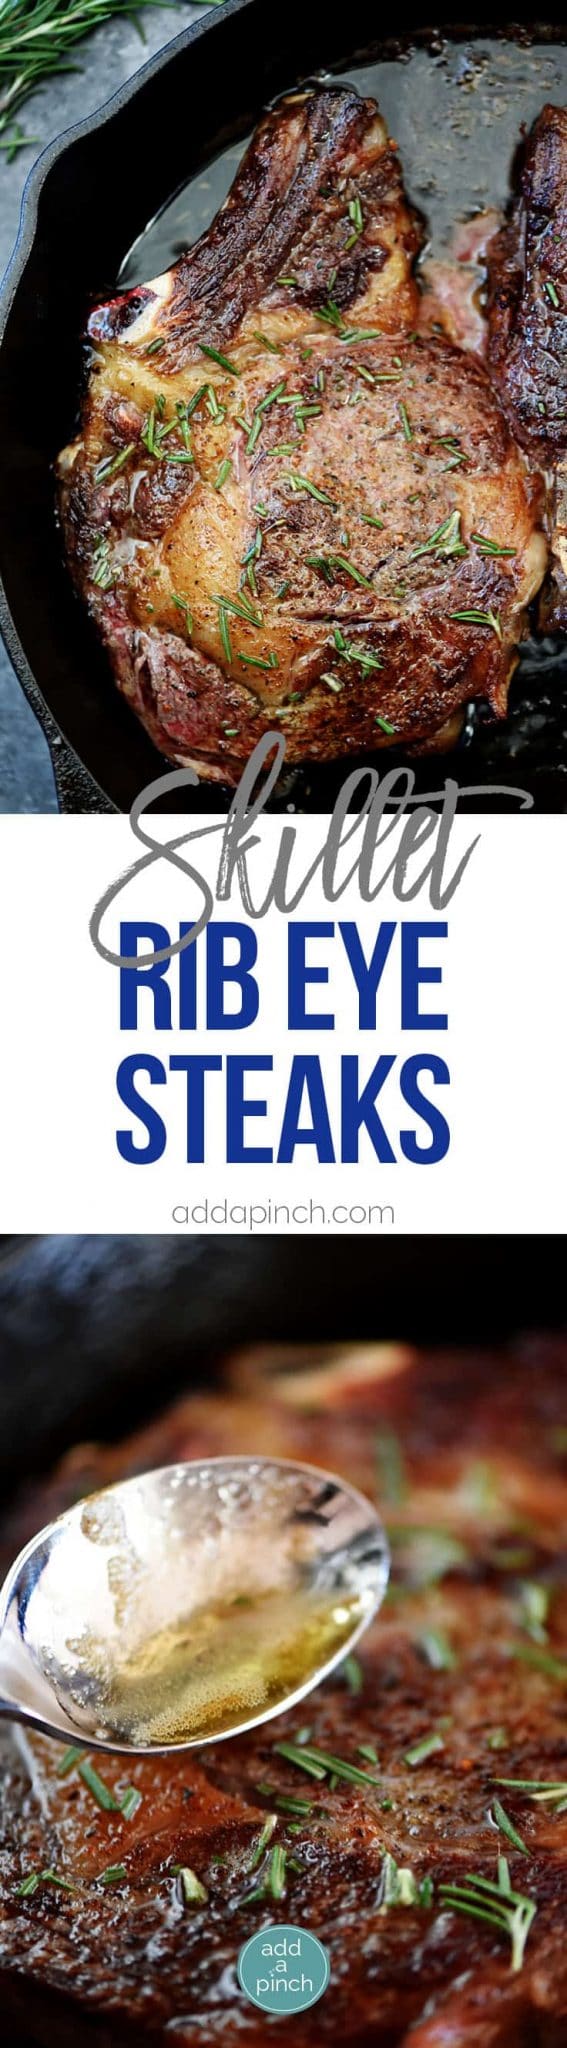 Skillet Rib Eye Steaks Recipe Add A Pinch 